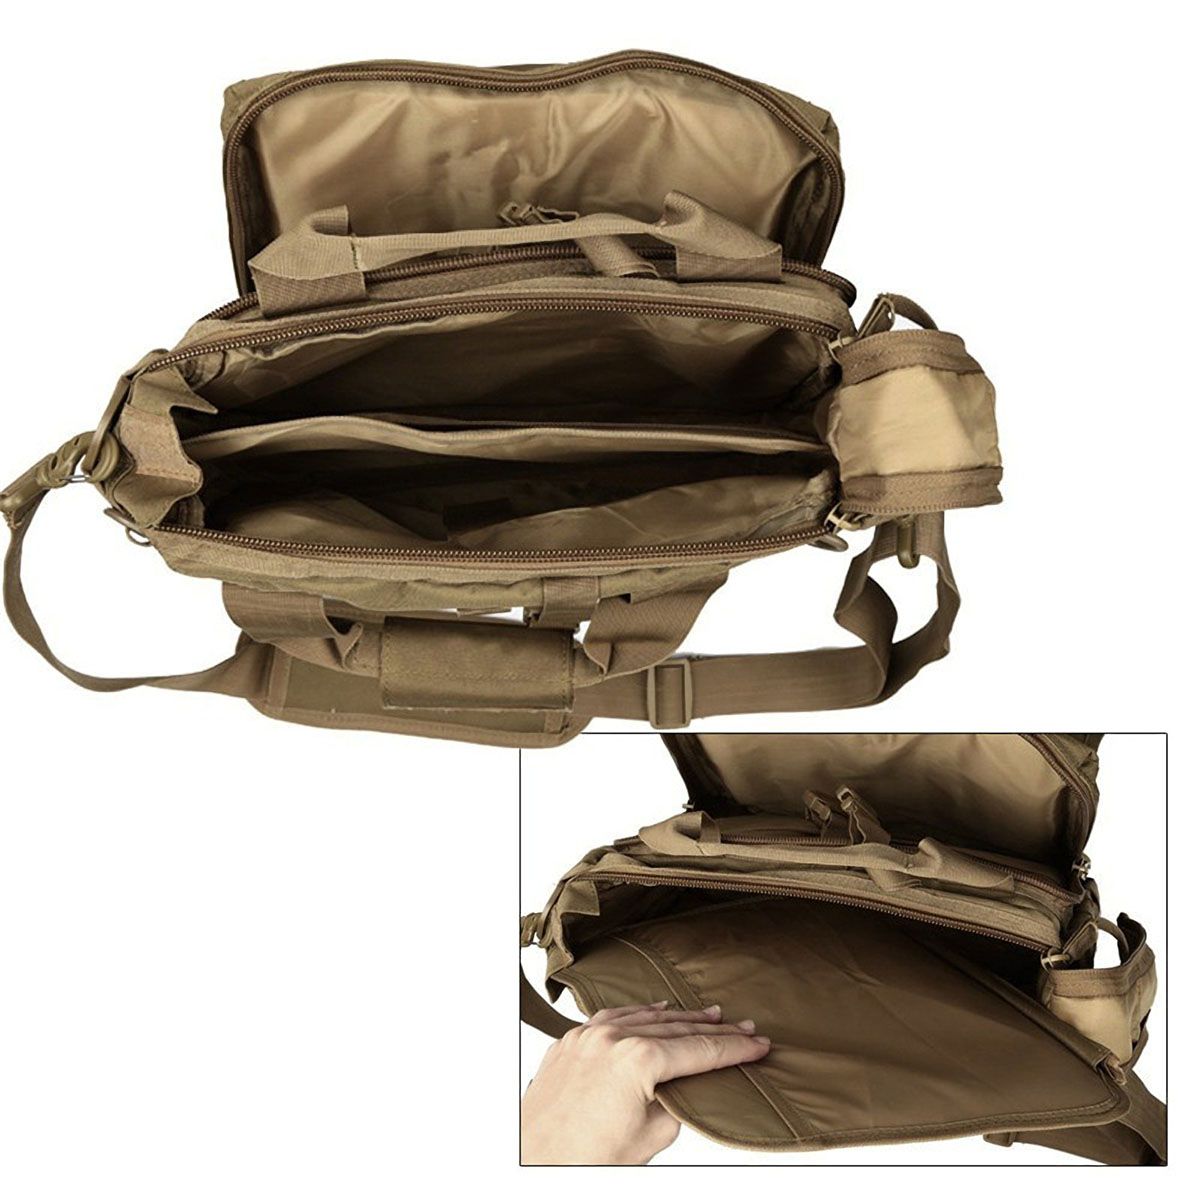 Outdoor-Backpack-Laptop-Bag-Shoulder-Computer-Bag-Waterproof-Handbag-Travel-Storage-Bag-for-14-inch--1754640